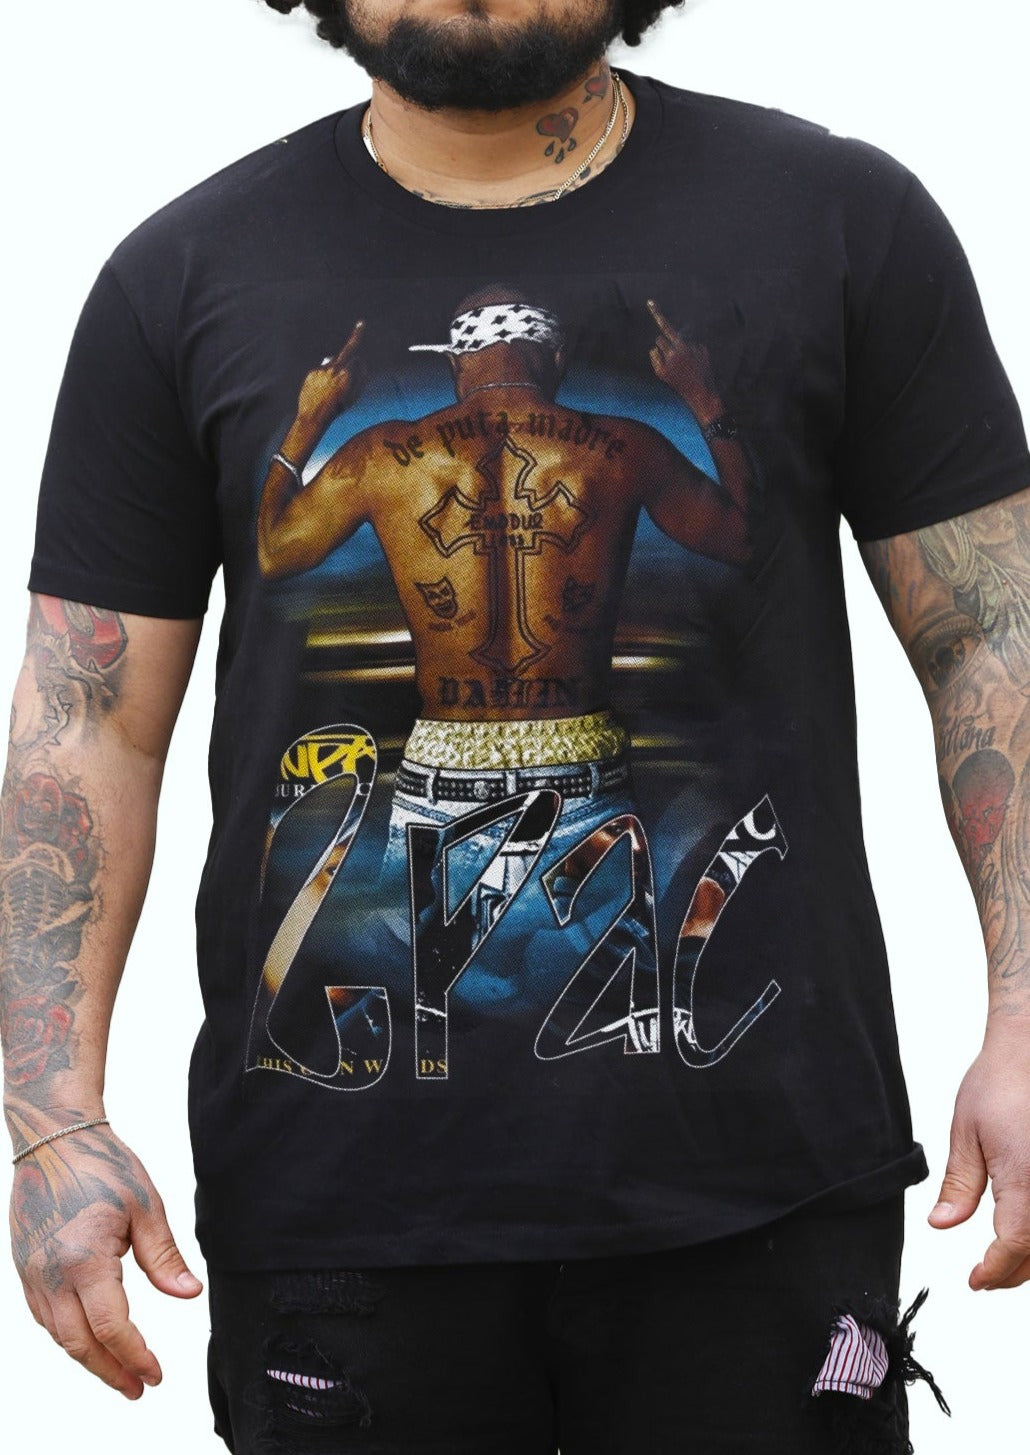 DPM69 T-shirt da uomo Design fatto a mano 2Pac Thug Life Exodus